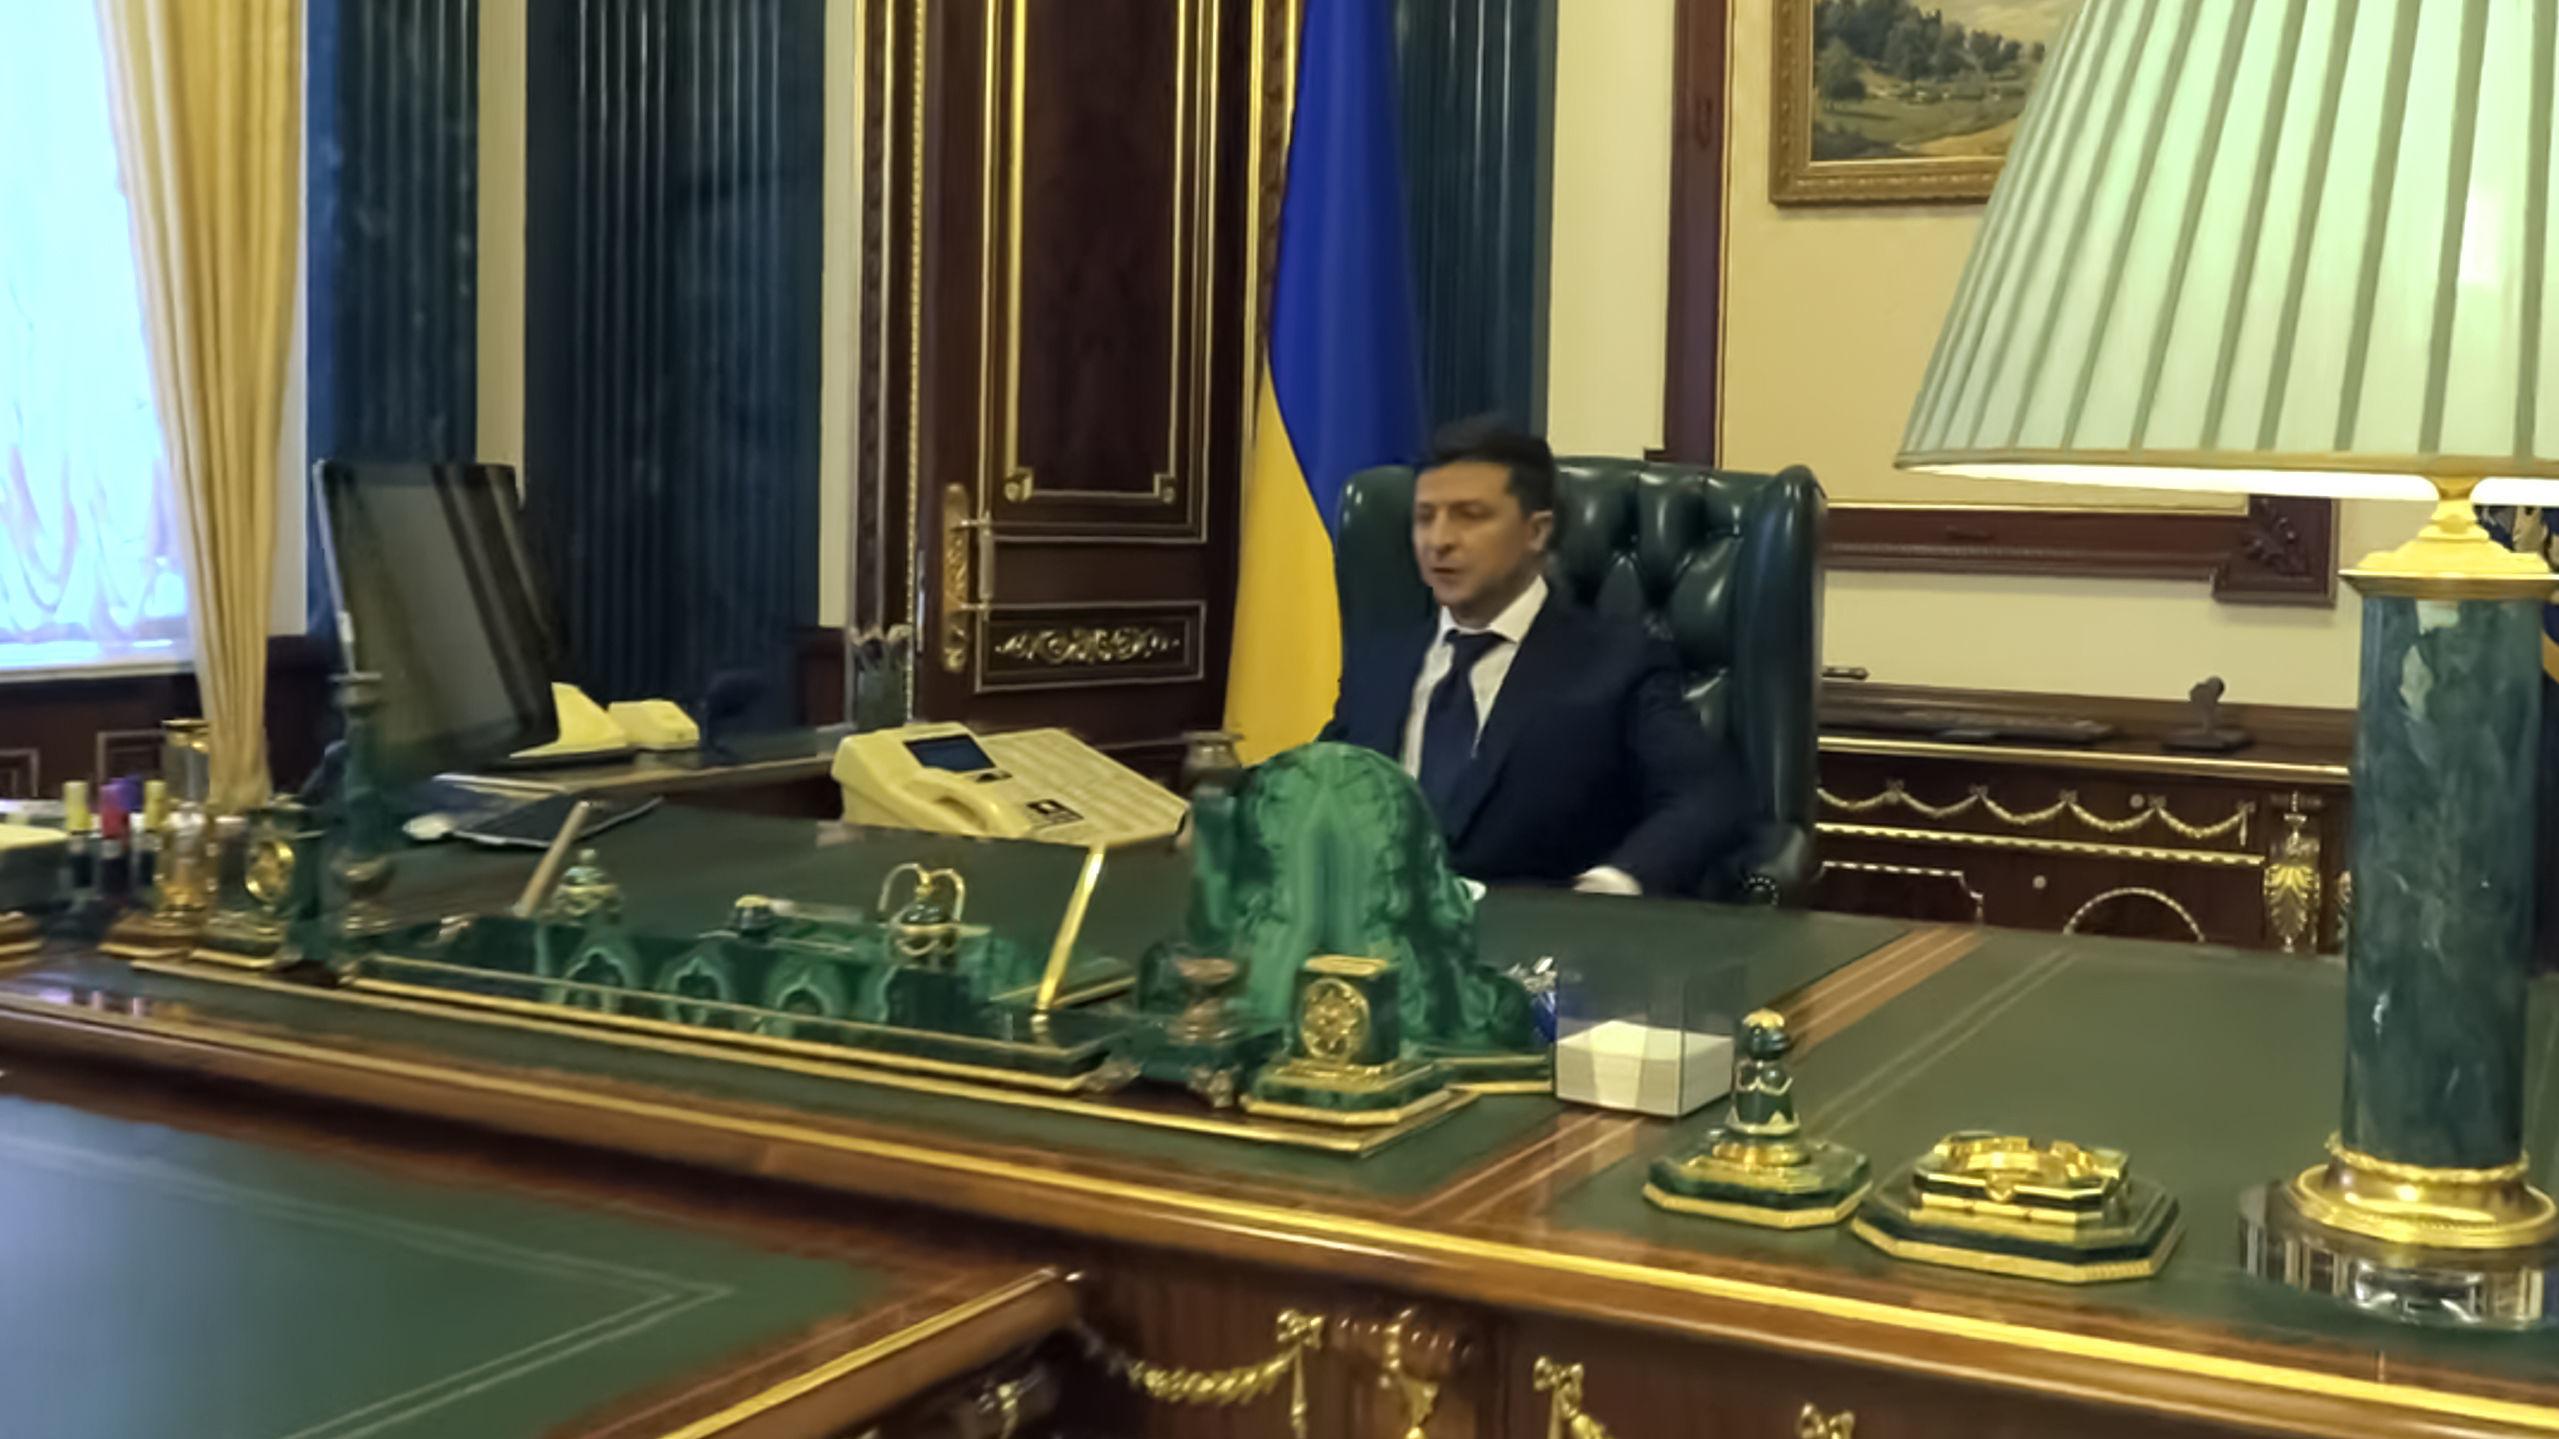 Кабинет президента Украины Зеленского